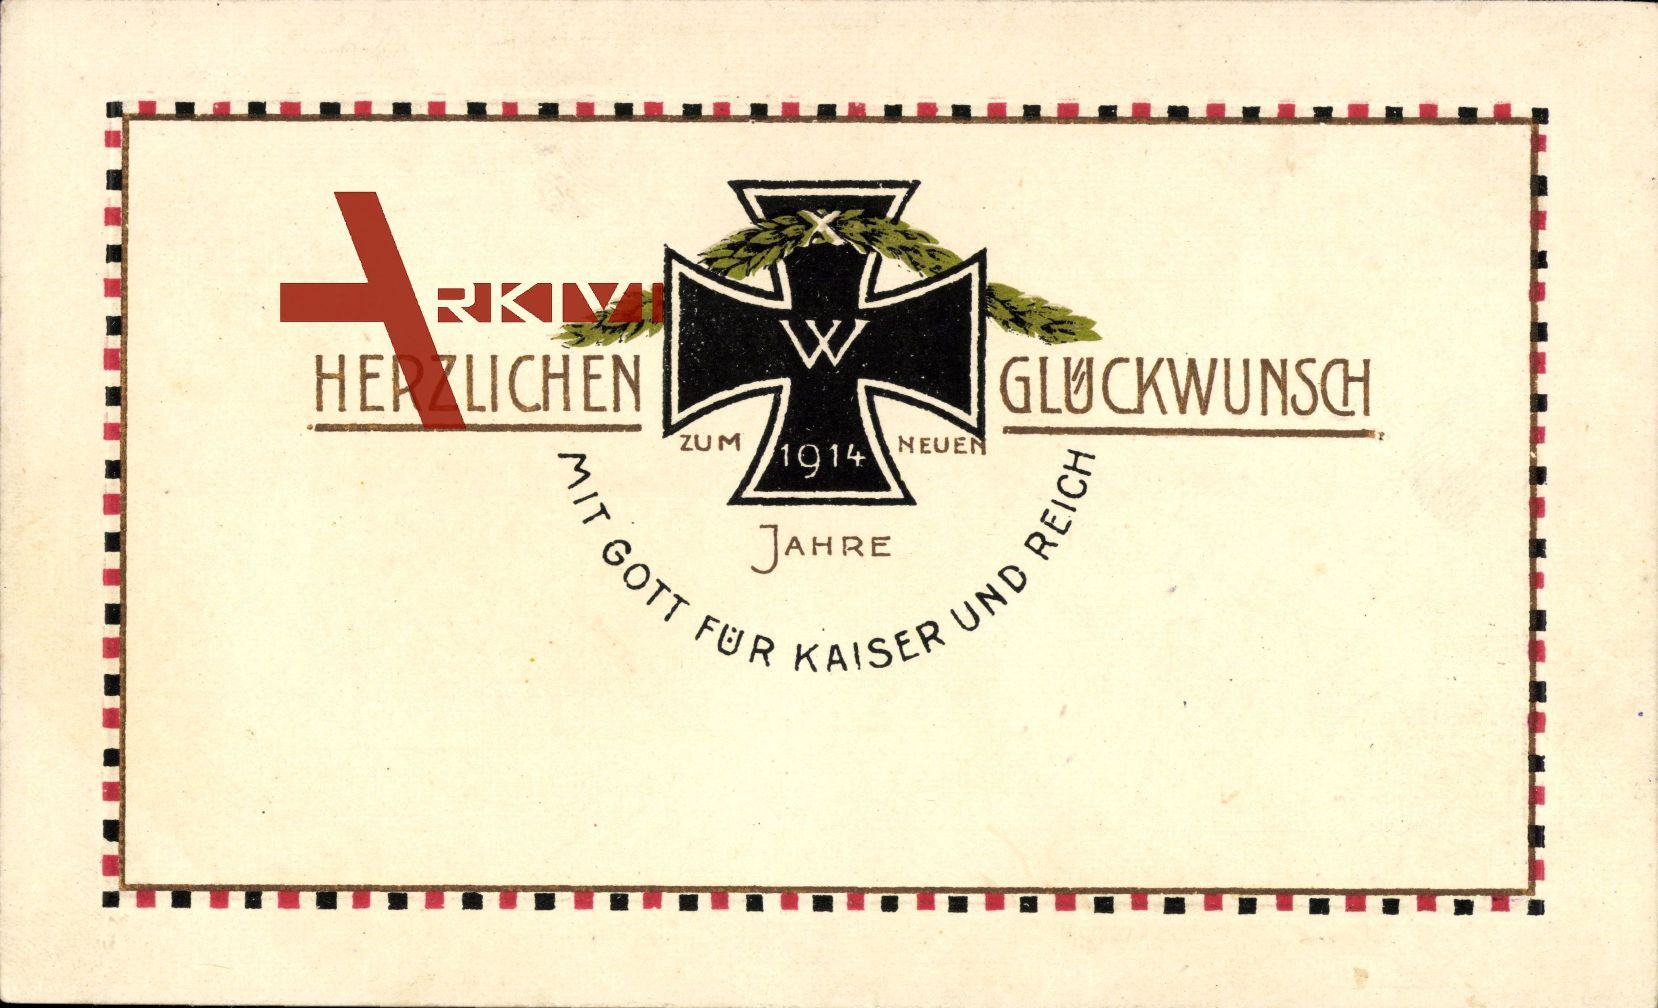 Glückwunsch Neujahr, Eisernes Kreuz, Patriotik, Kaiserreich